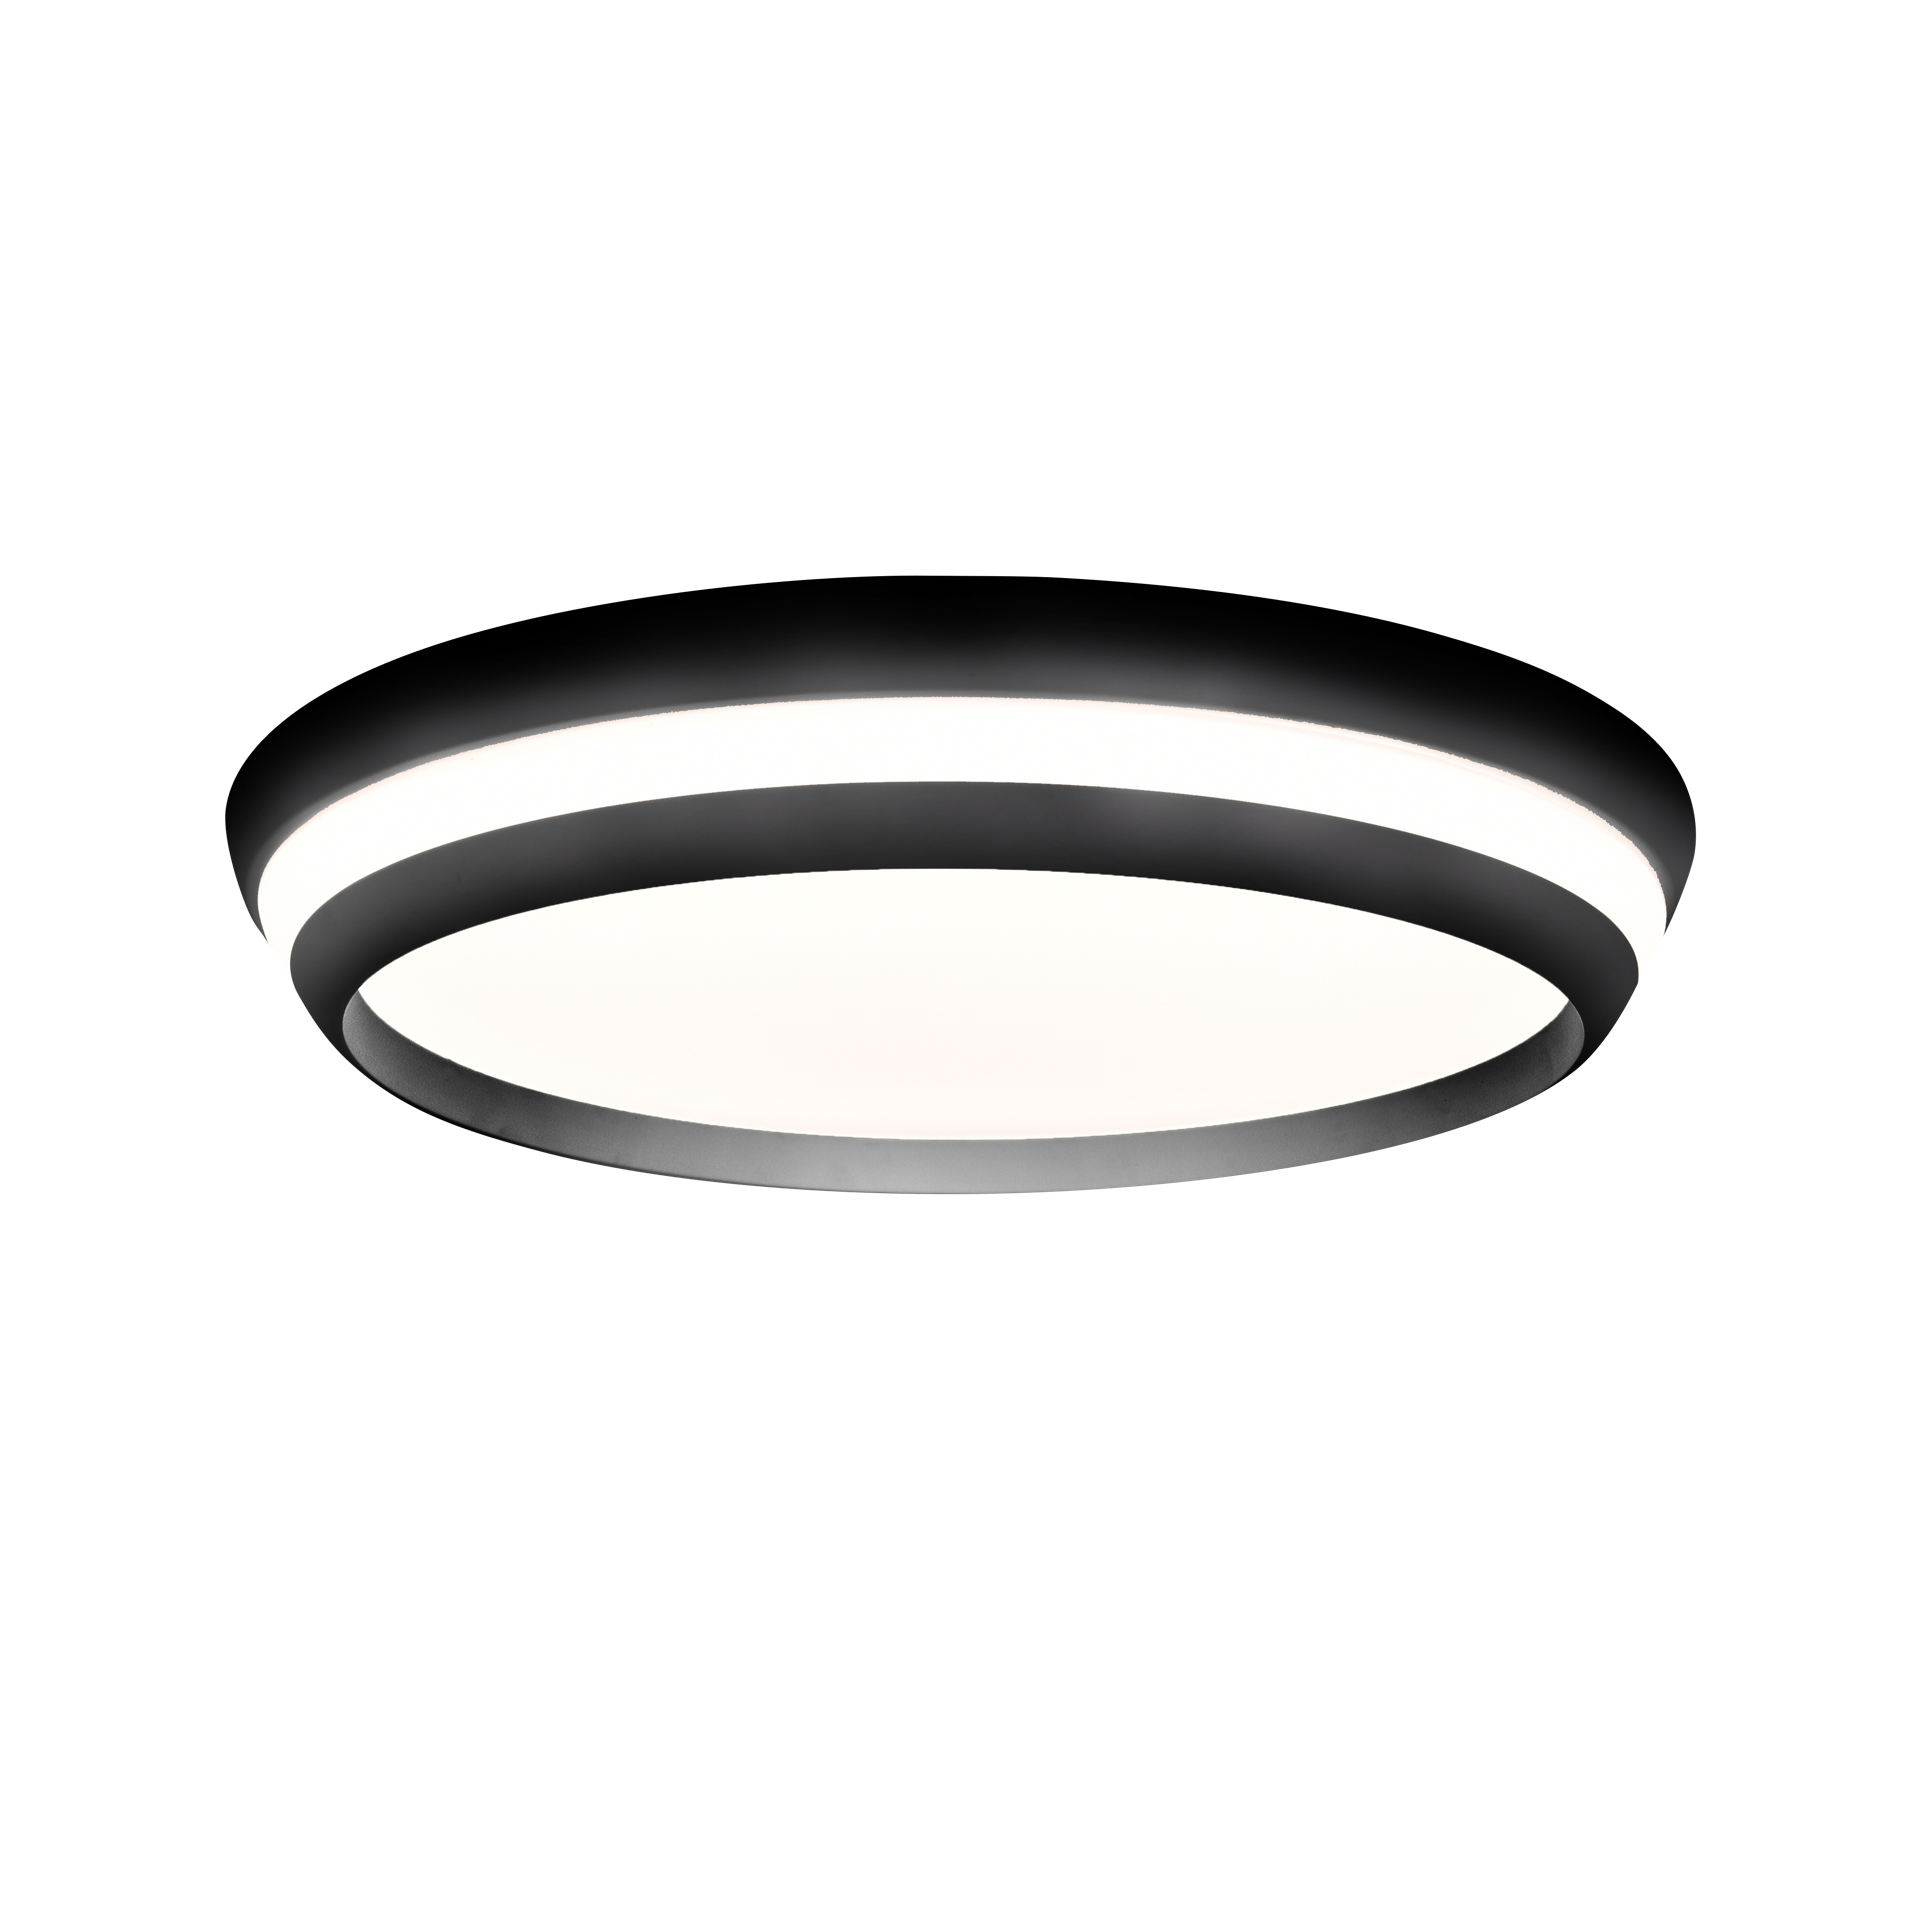 journalist Luchtvaartmaatschappijen tijger Lutec Cepa - plafondverlichting - slimme verlichting - Lutec Connect - Ø45  x 8,15 cm - 40W LED incl. - dimfunctie en instelbare lichtkleur via app -  zwart | Lichtkoning